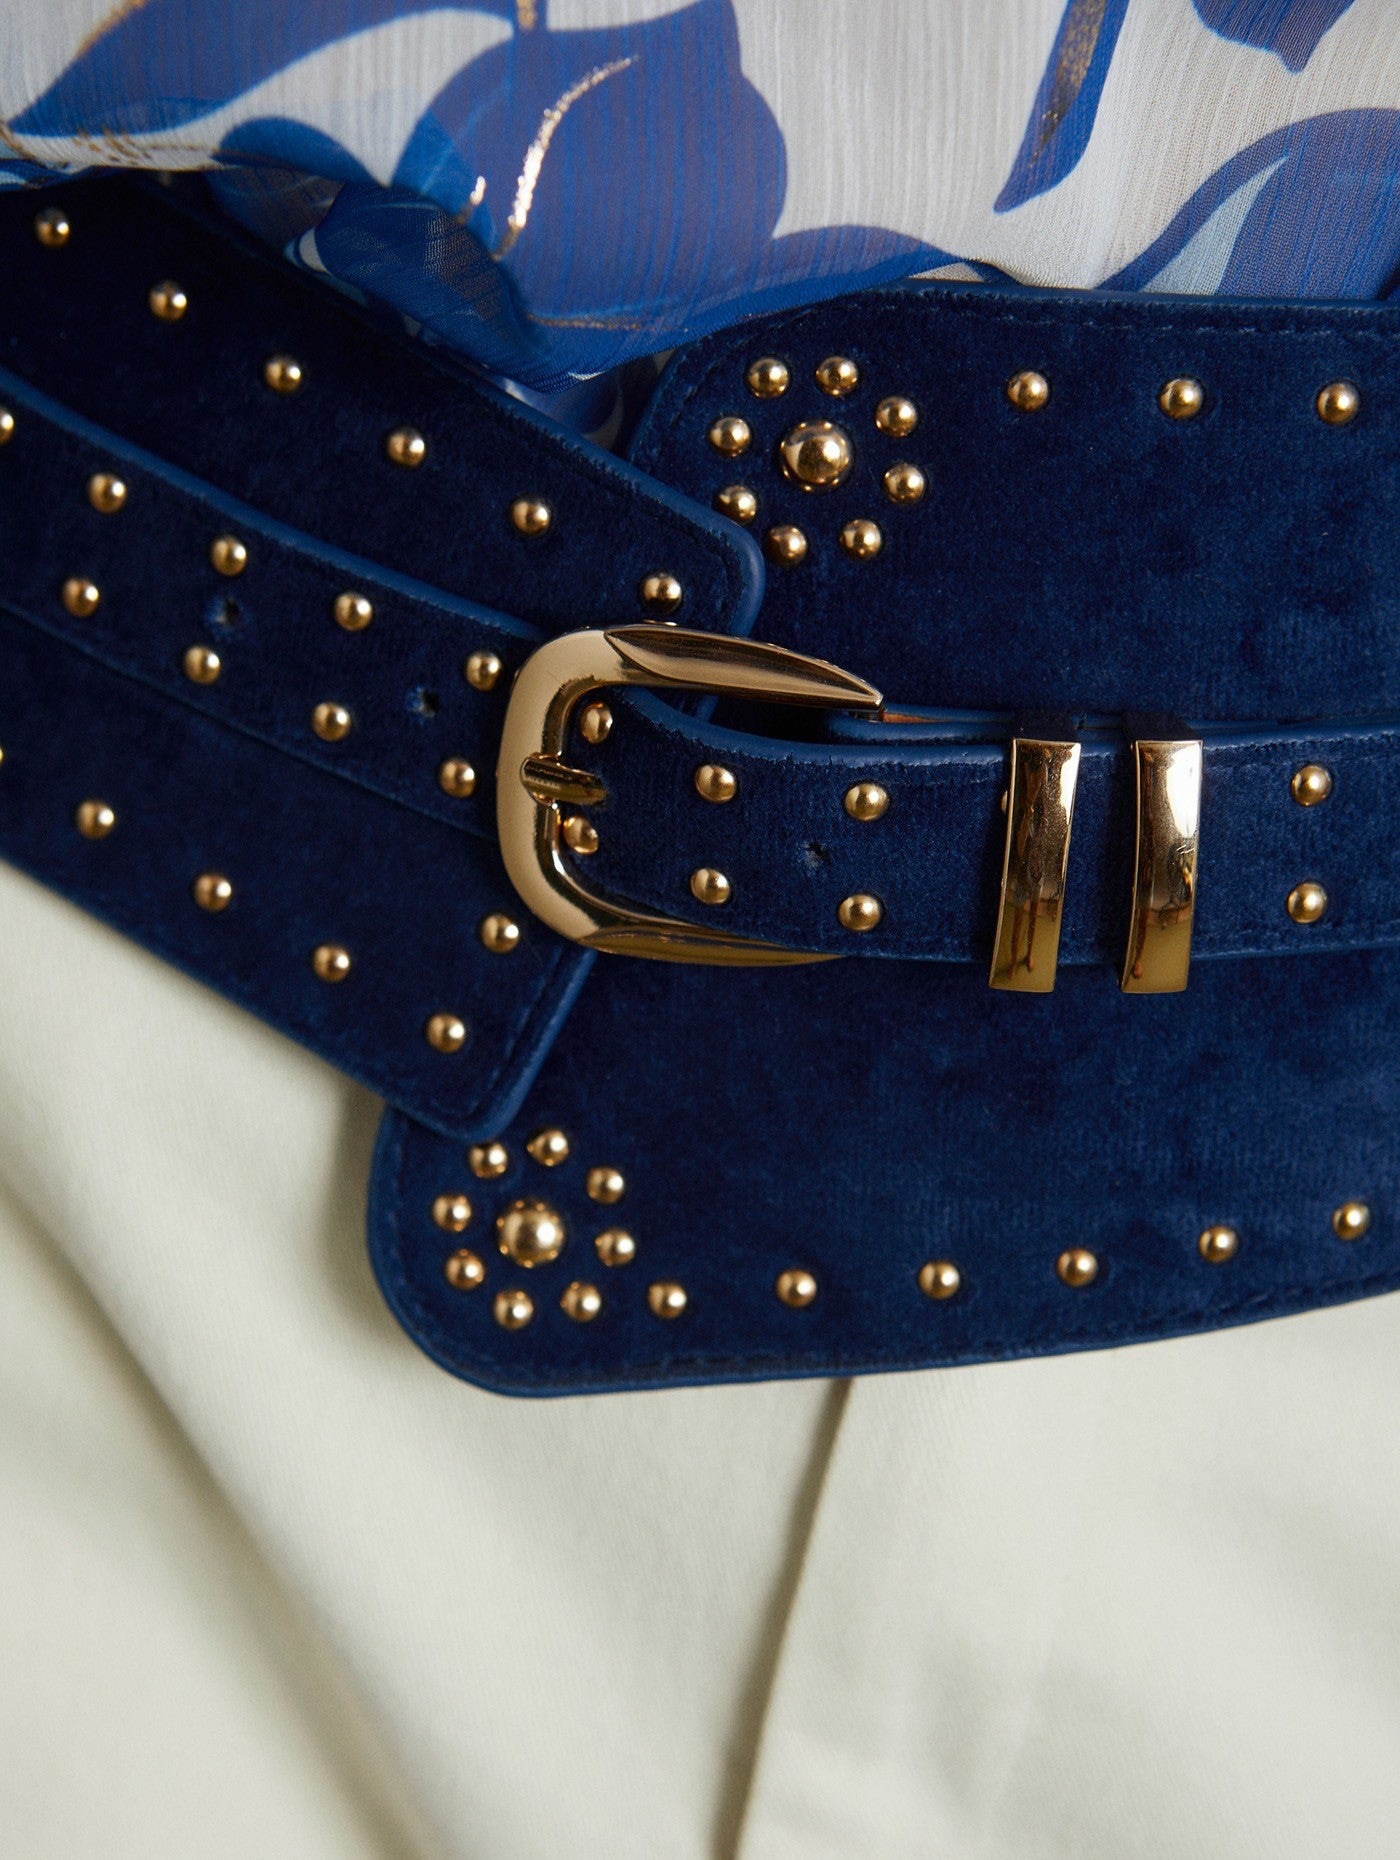 Cinto Azul Faixa Tachas Douradas by Meisie detalhe